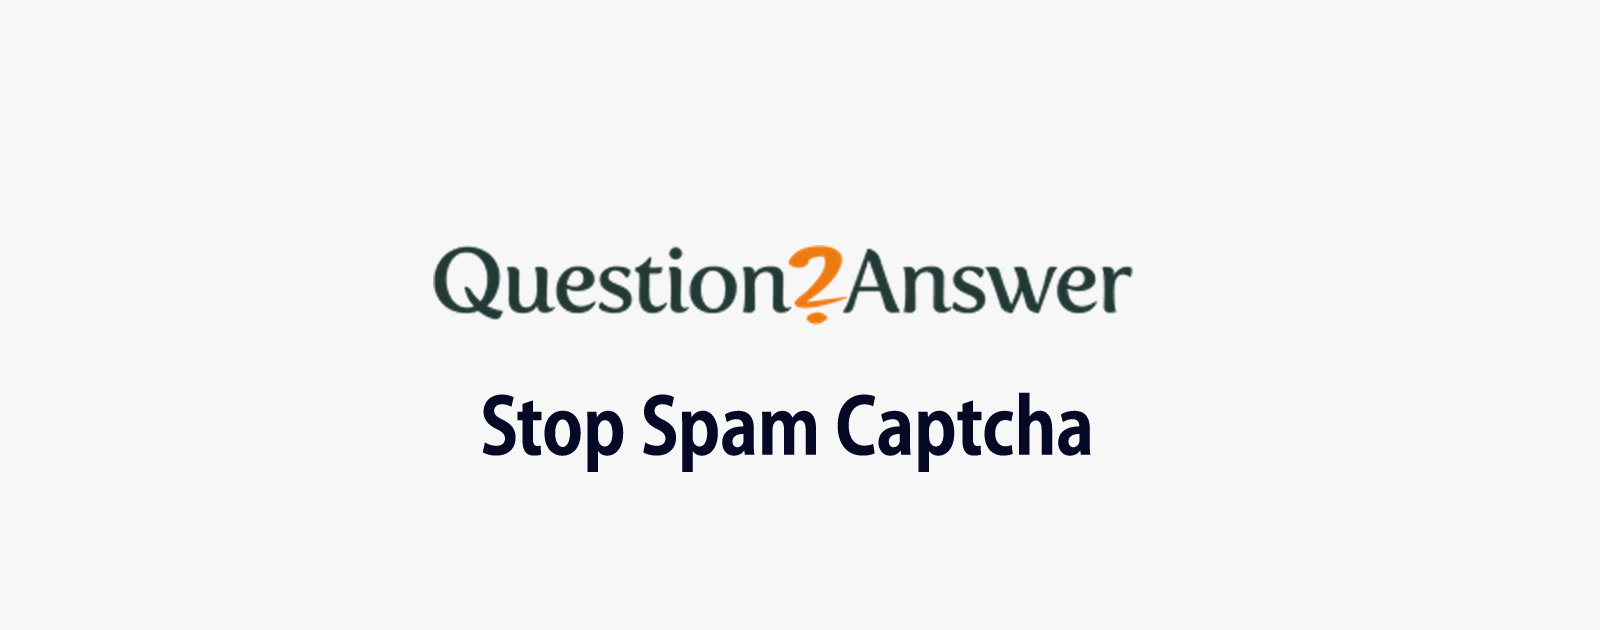 Question2Answerでスパムによるユーザー登録に悩んだら「Stop Spam Captcha」を使おう